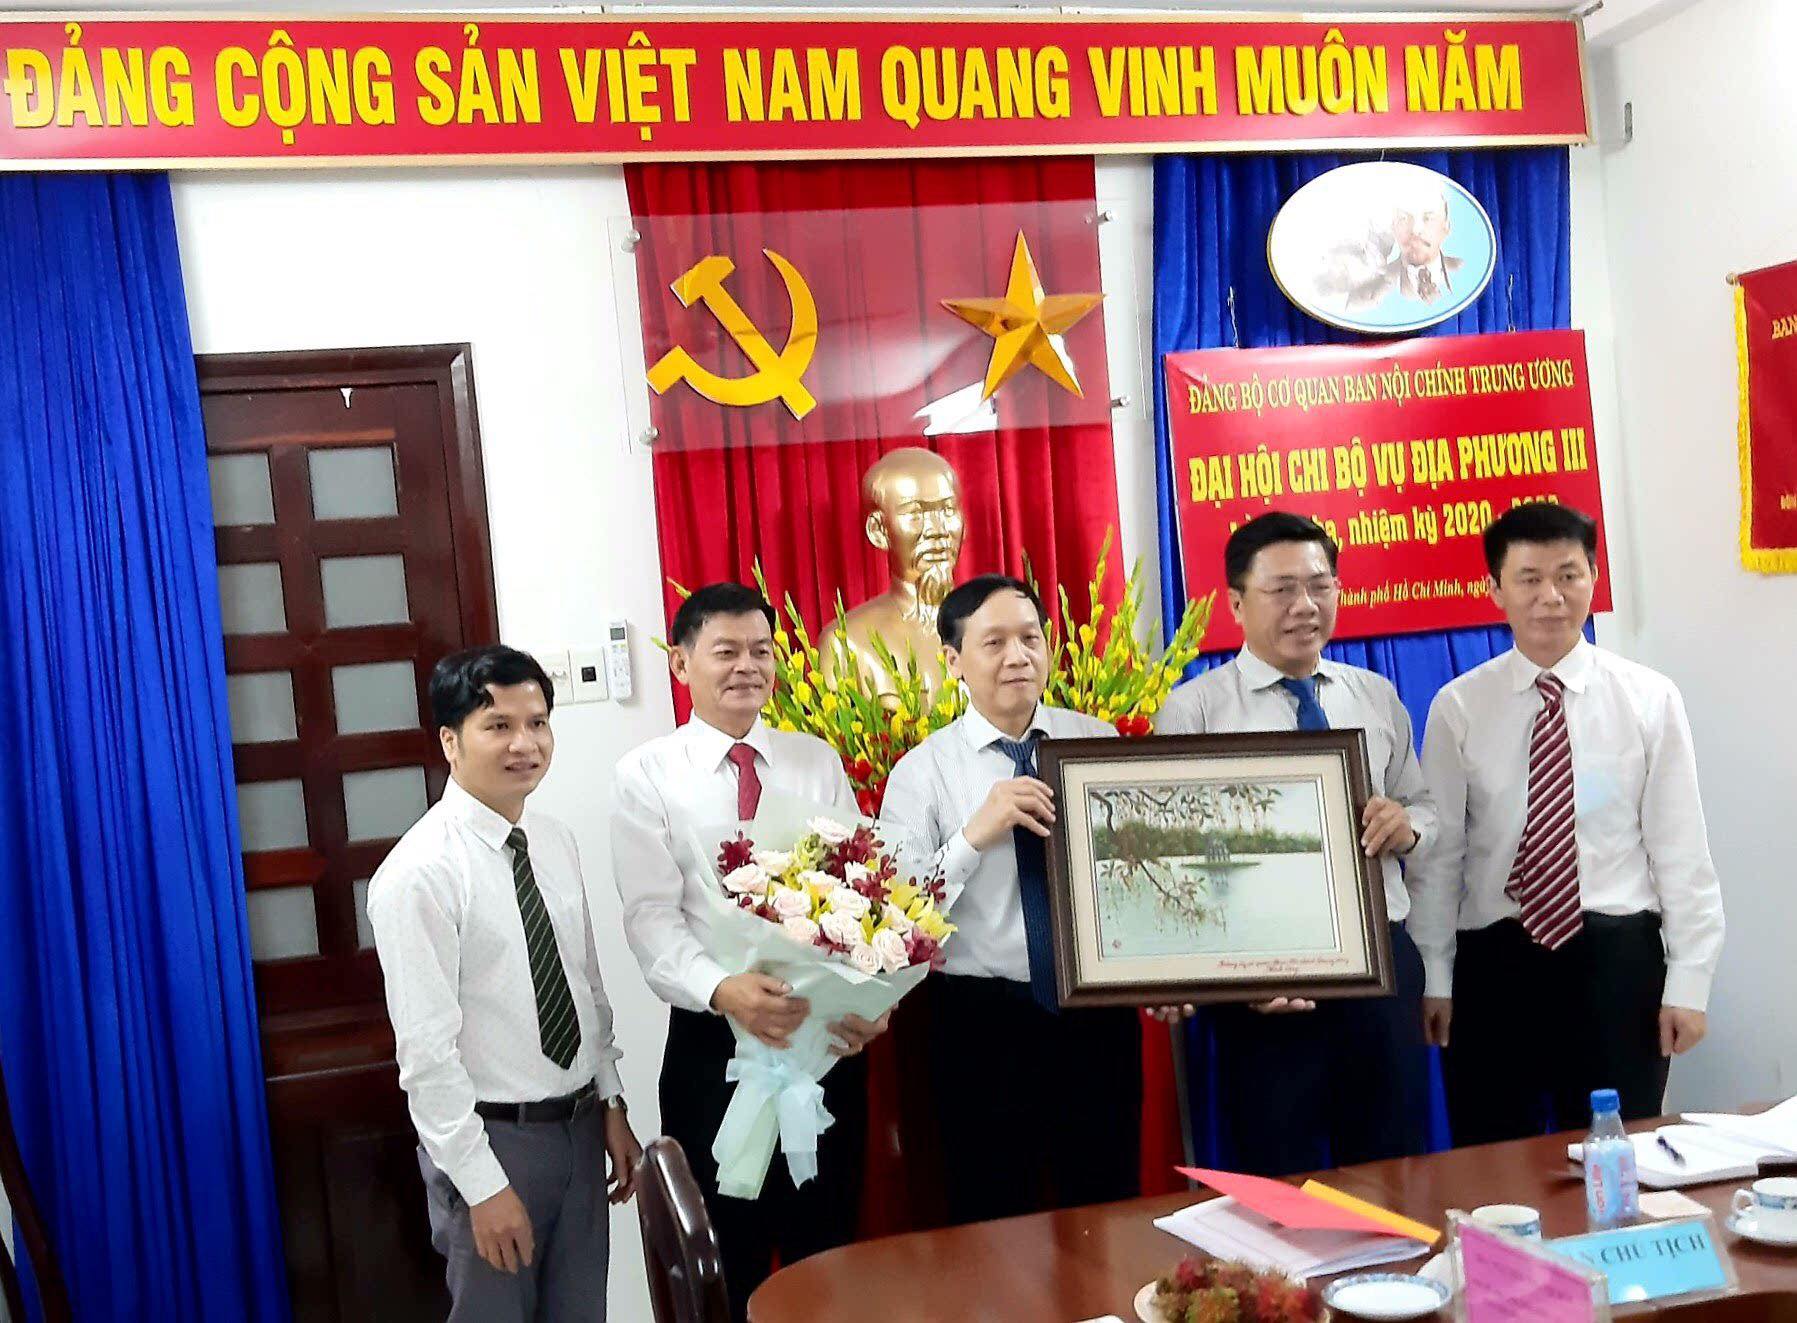 Đồng chí Nguyễn Thanh Hải, Phó Bí thư Thường trực Đảng bộ cơ quan, Phó Trưởng Ban Nội chính Trung ương chúc mừng các đồng chí được bầu vào cấp ủy Chi bộ Vụ địa phương III, nhiệm kỳ 2020-2022.